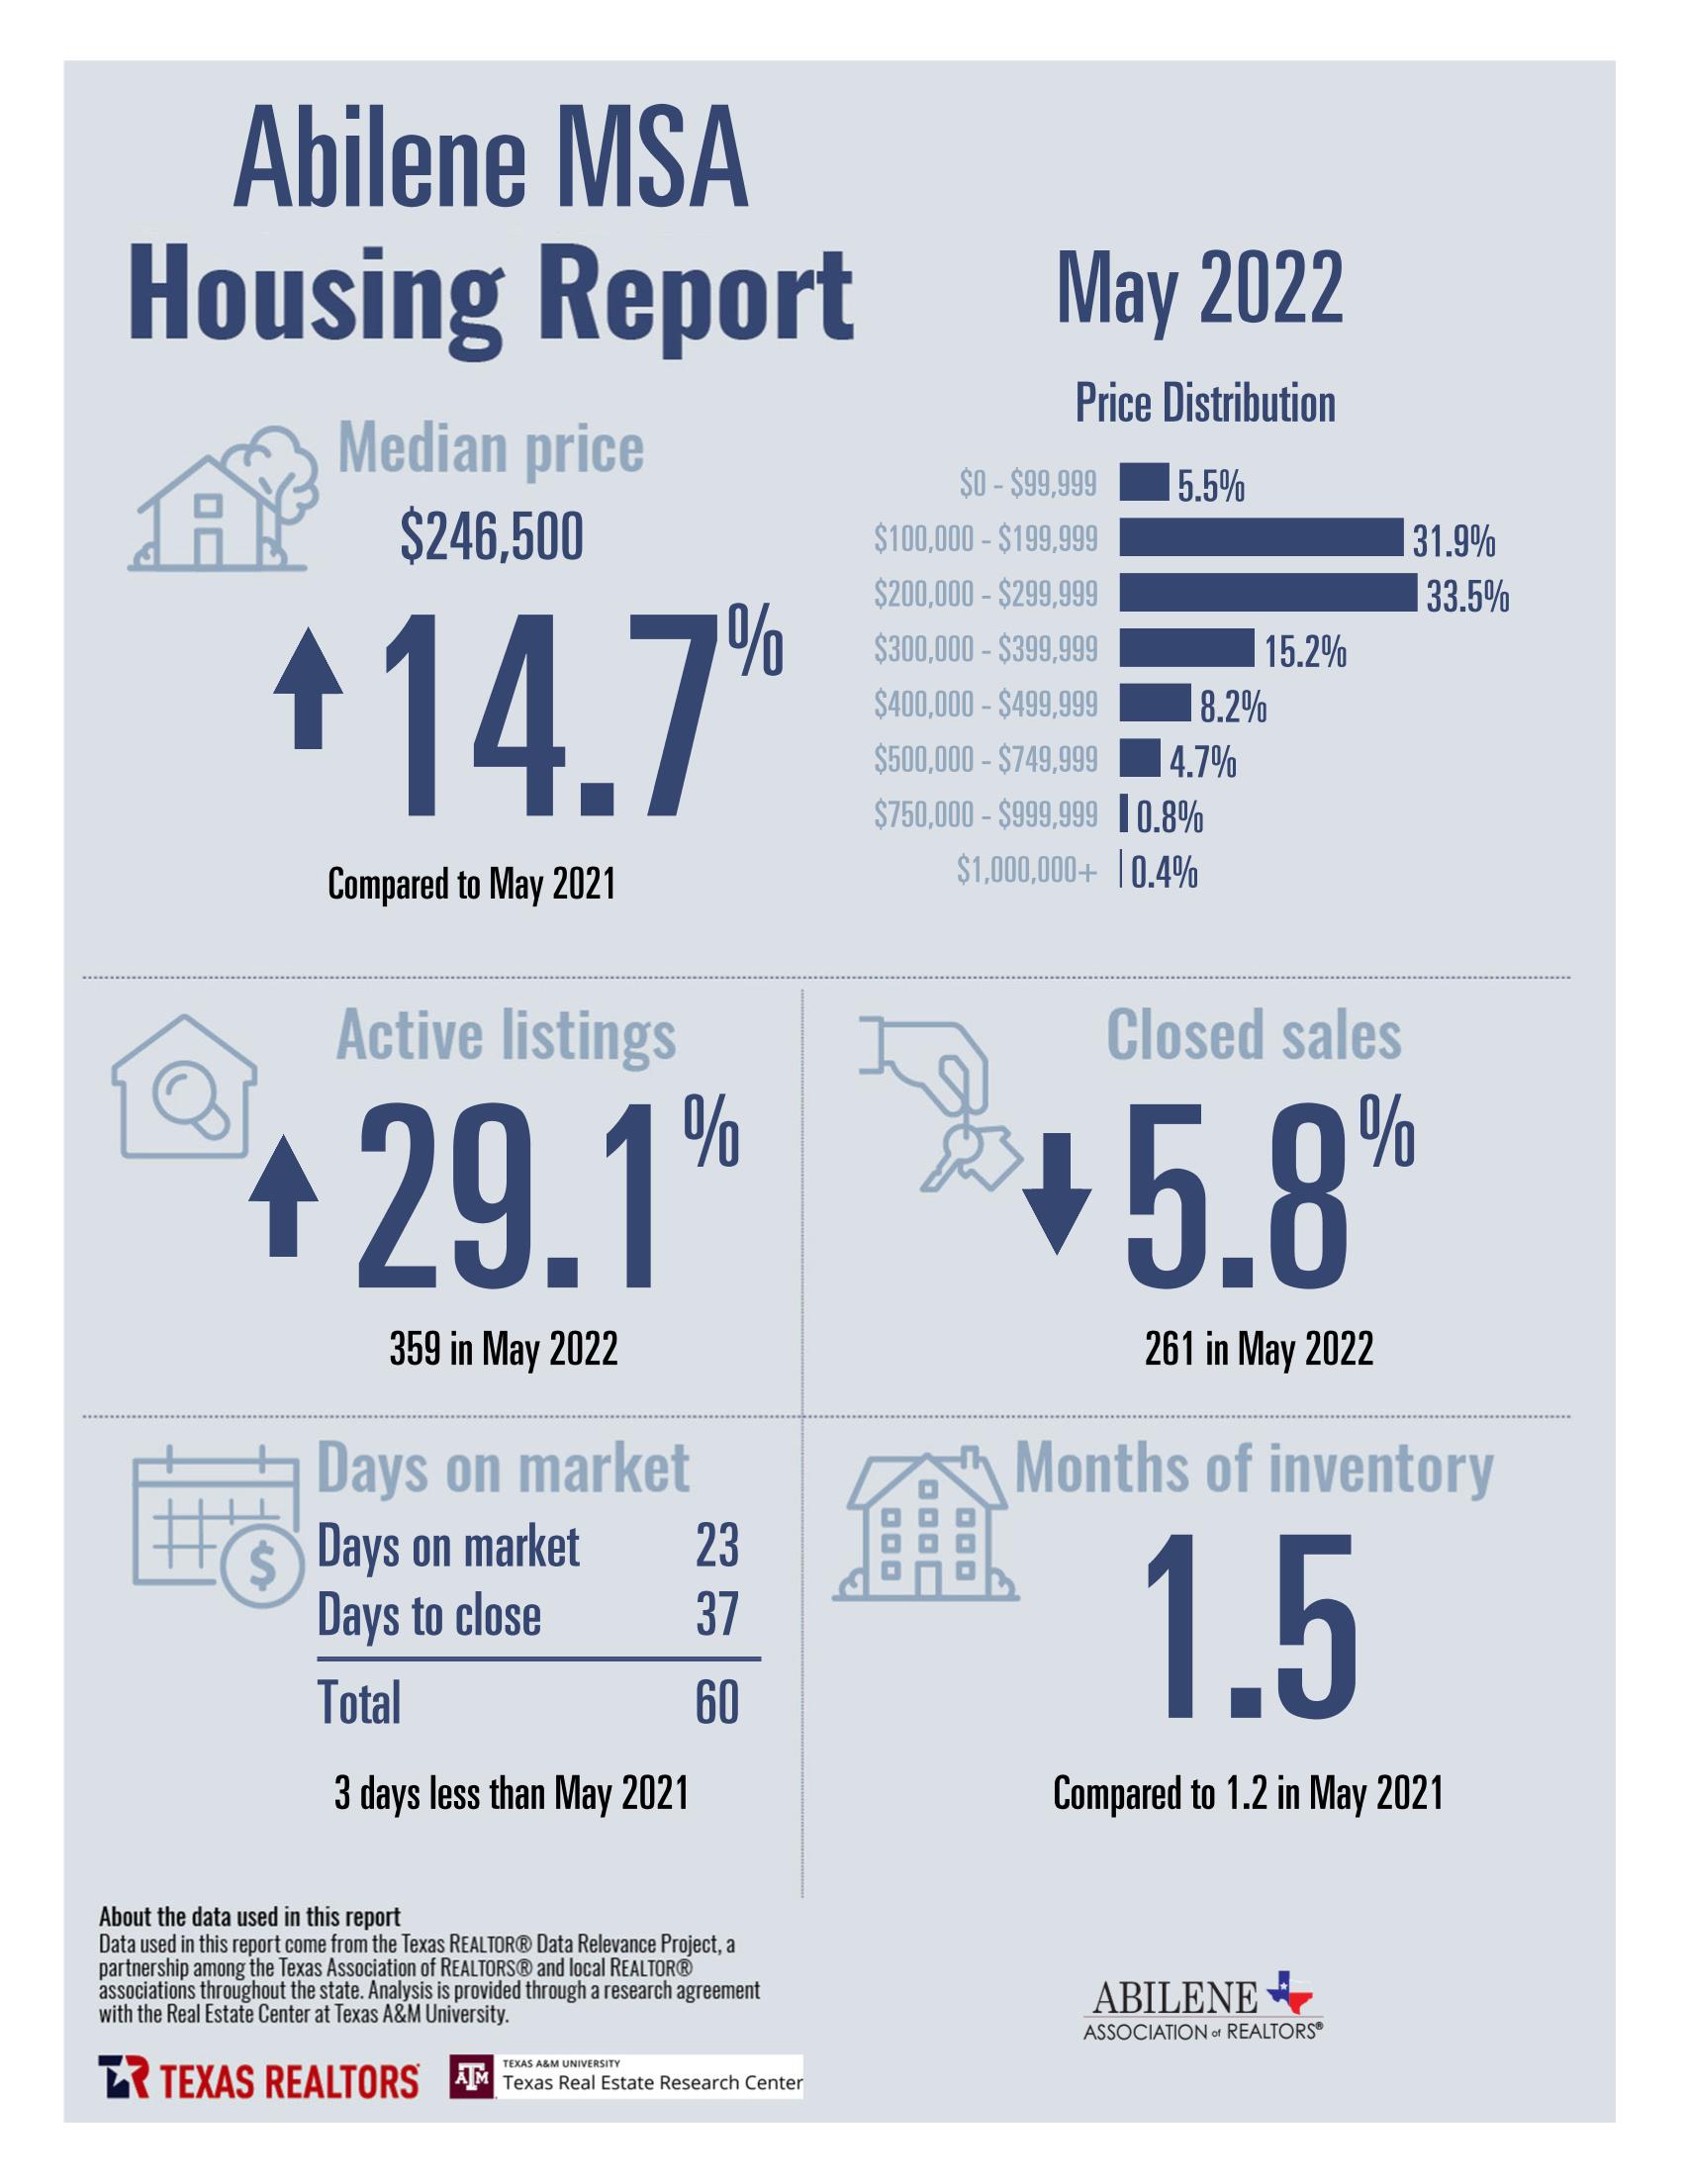 Abilene Housing Market Data - May 2022